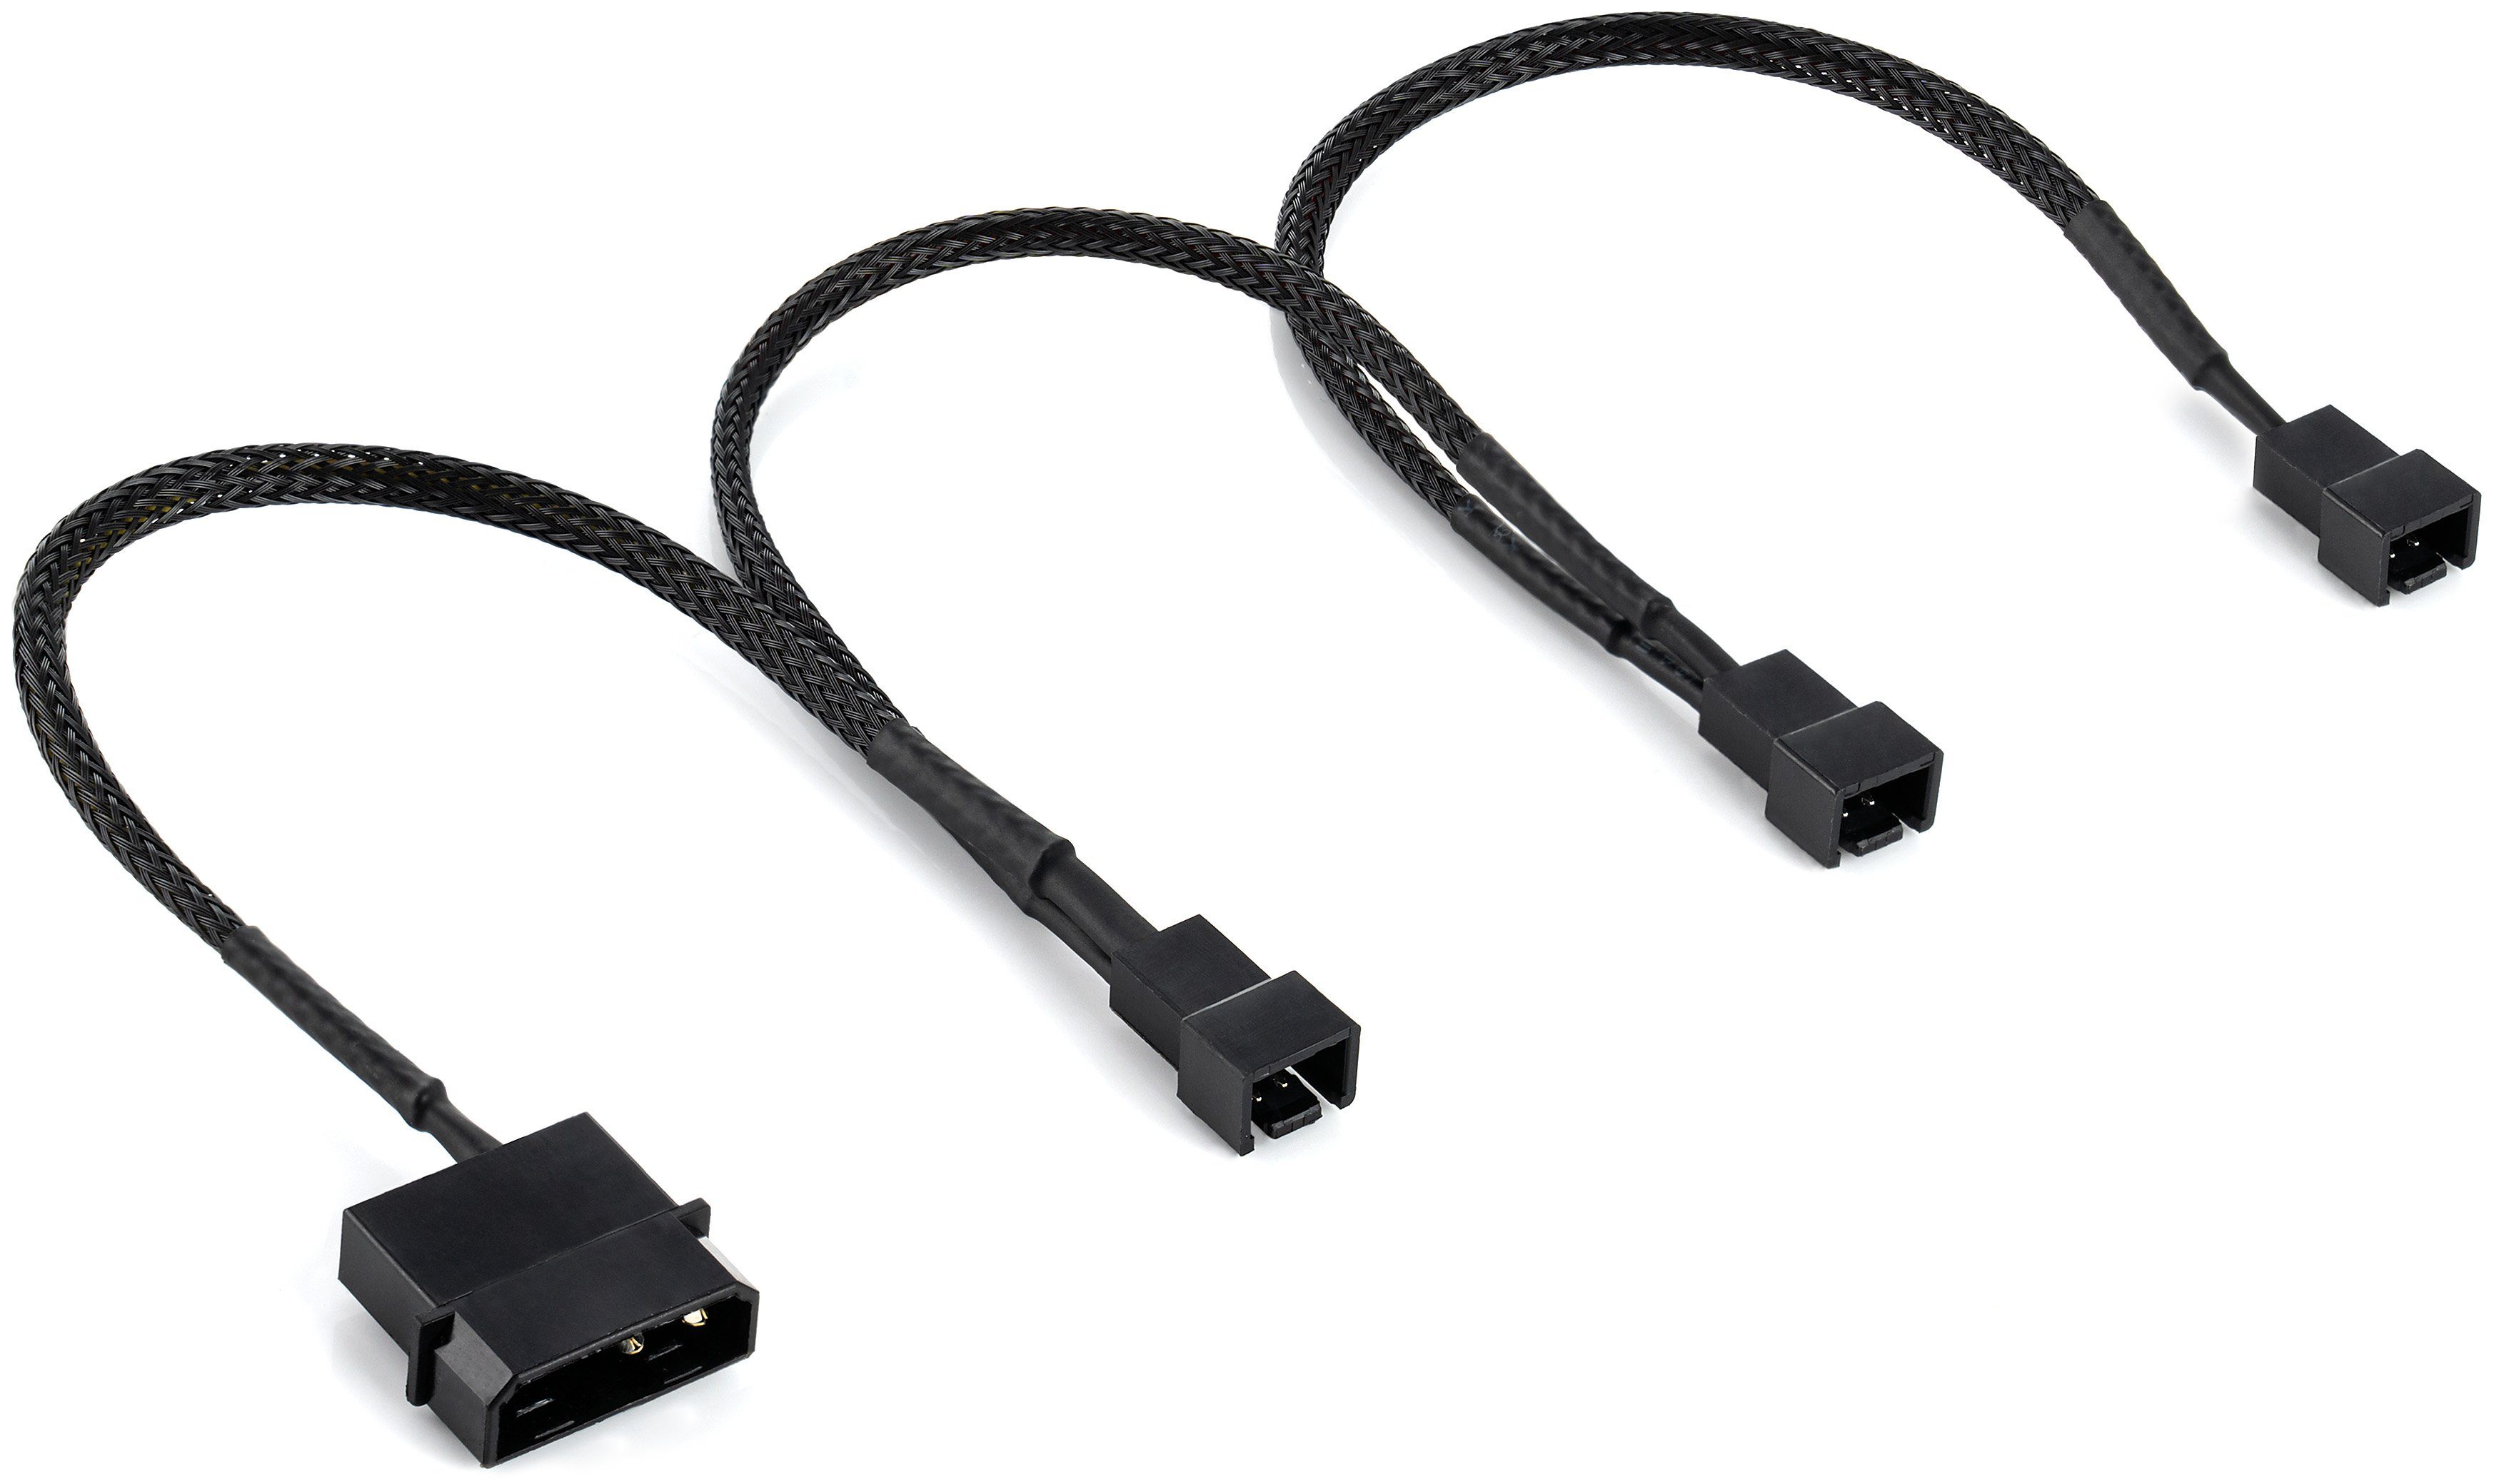 Verteilerleiste mit USB-Anschlusskabel und Stecker  *NEU* 